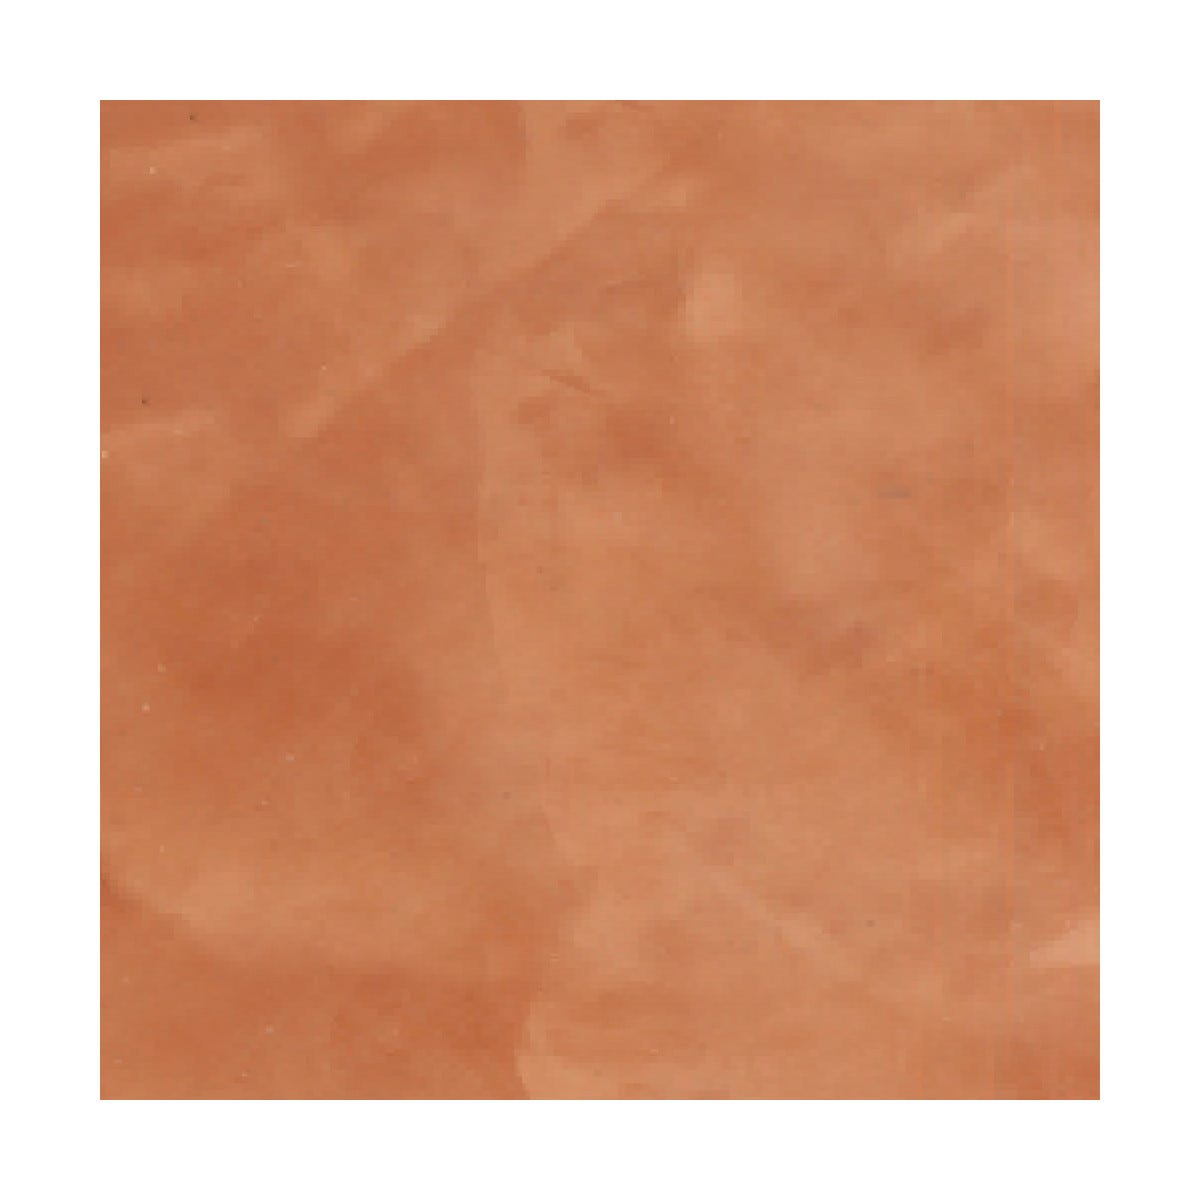 Mortier + teinte - stucco (sans primaire ni finition) - STUCCOLIS Mortier + teinte Orange Sanguine - kit jusqu'à 7 m²ARCANE INDUSTRIES 1